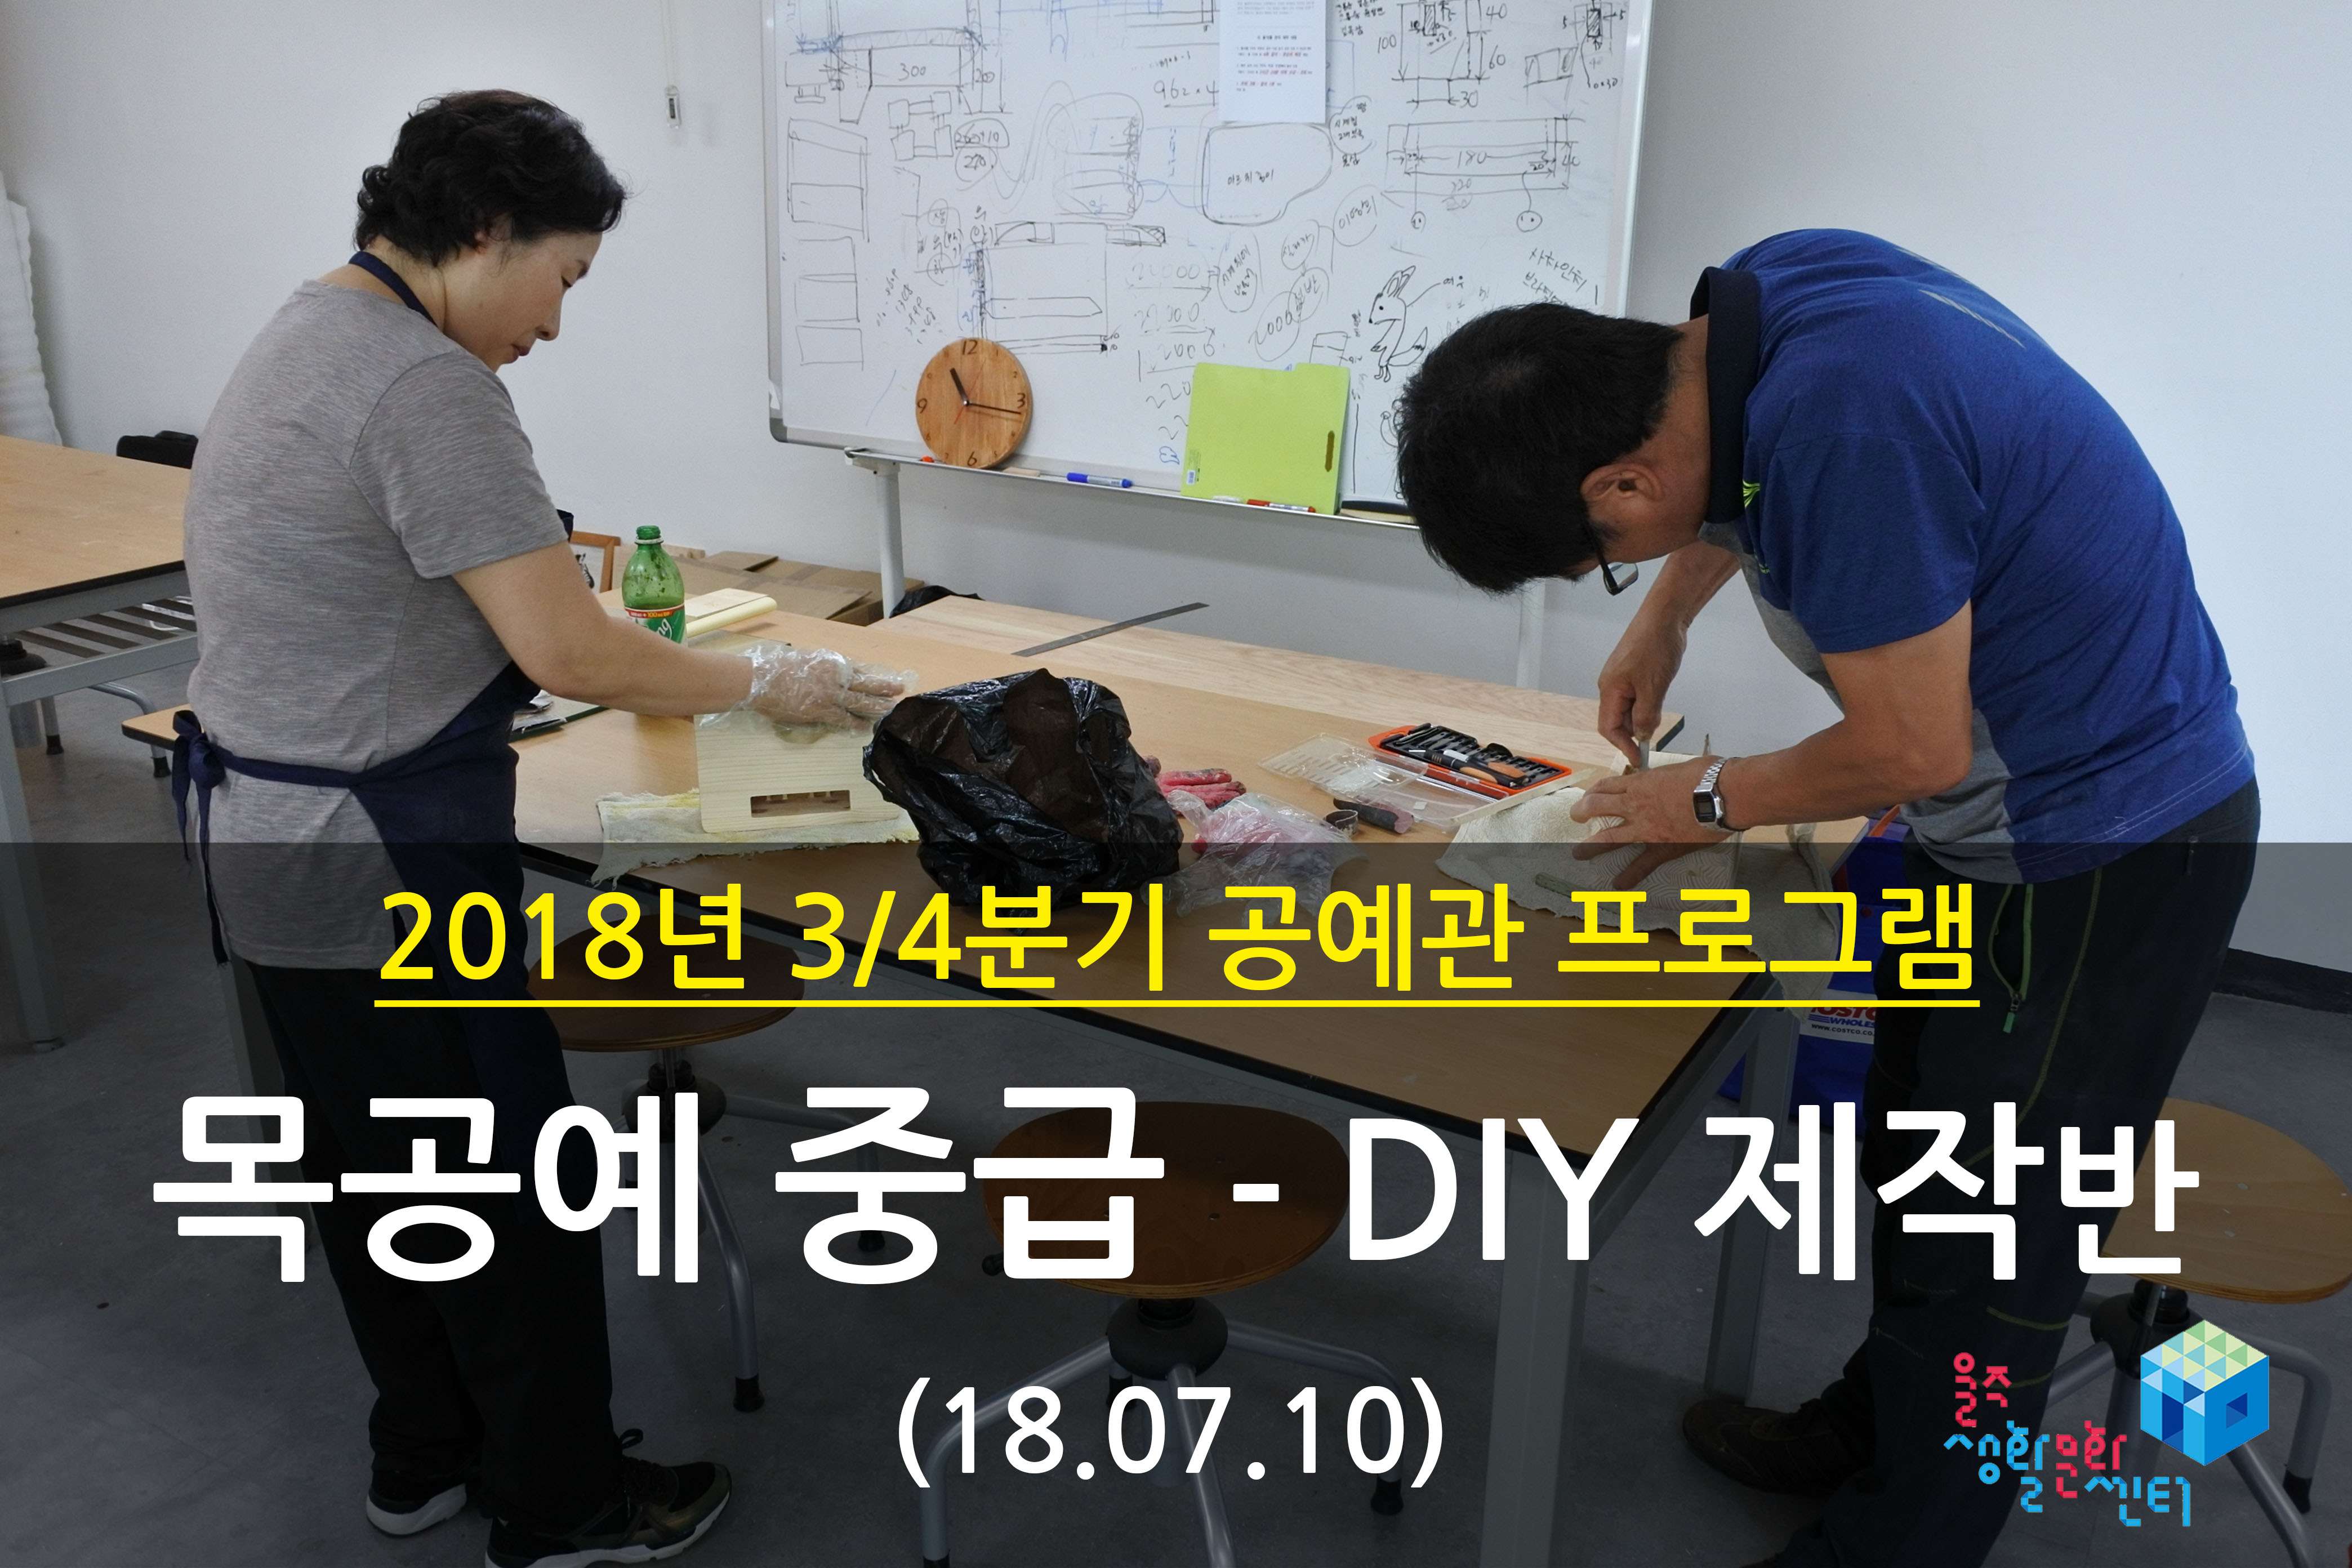 2018.07.10 _ 목공예 중급 - DIY 제작반 _ 3/4분기 2주차 수업